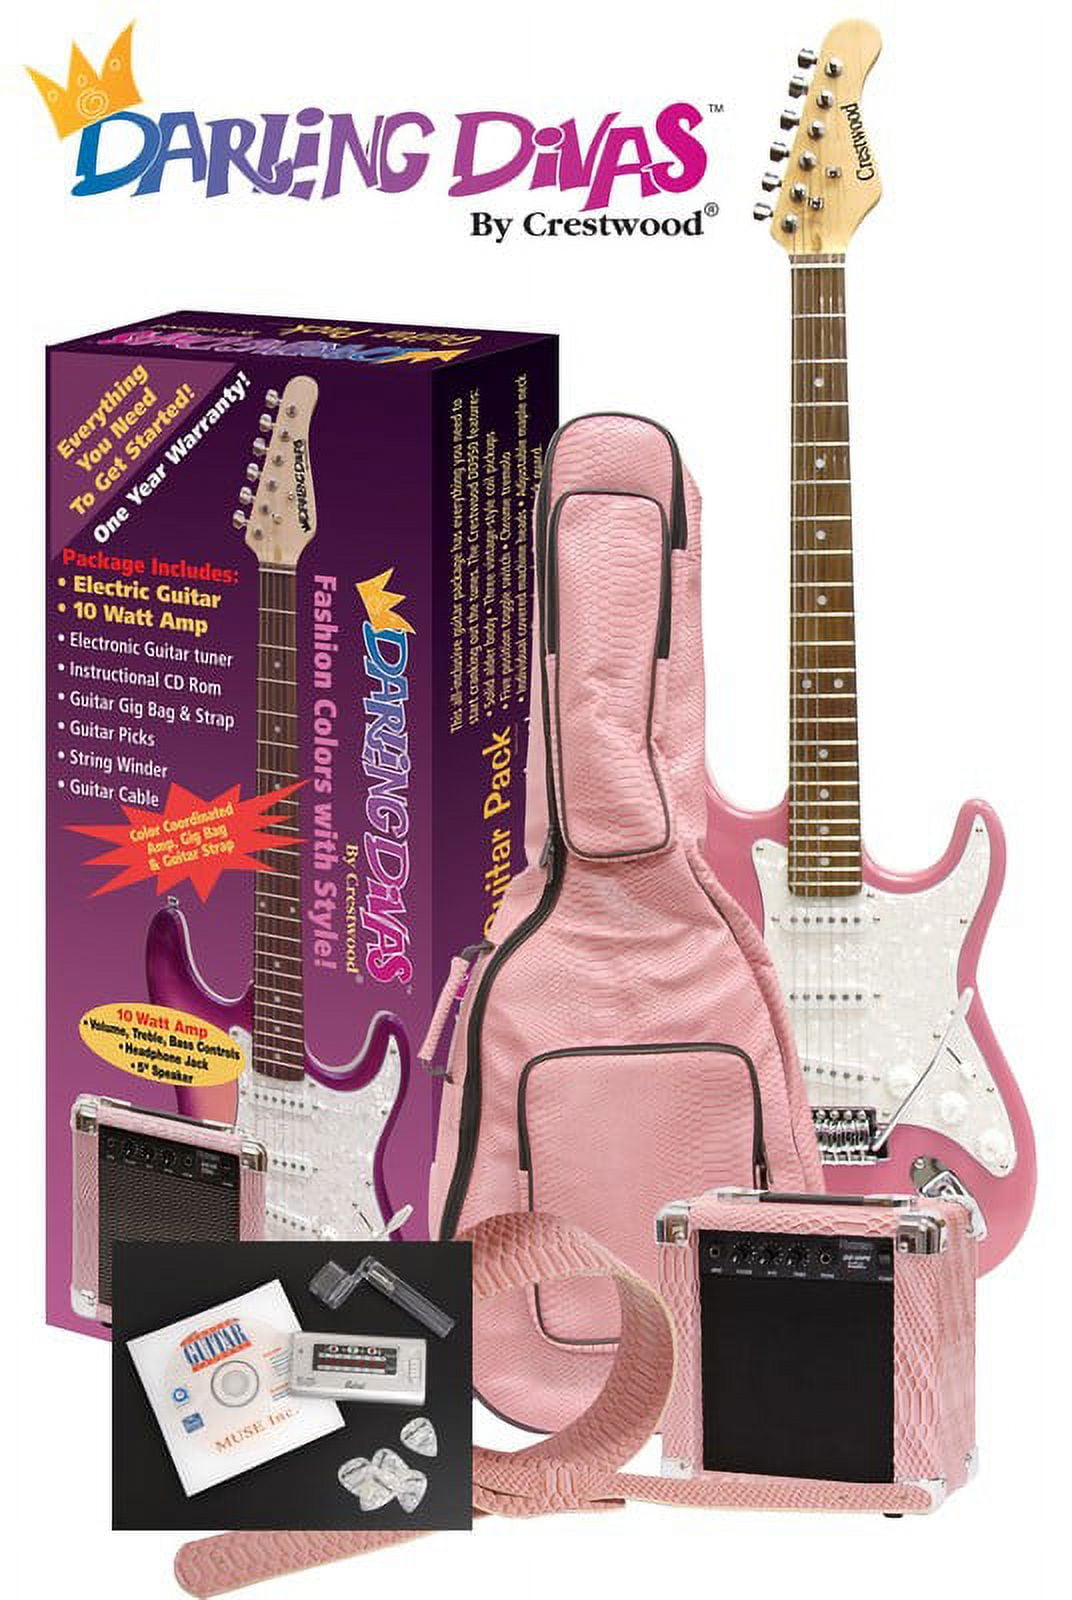 Hot Pink Cheetah Guitar Bag Strap – Sugar Beach Boutique